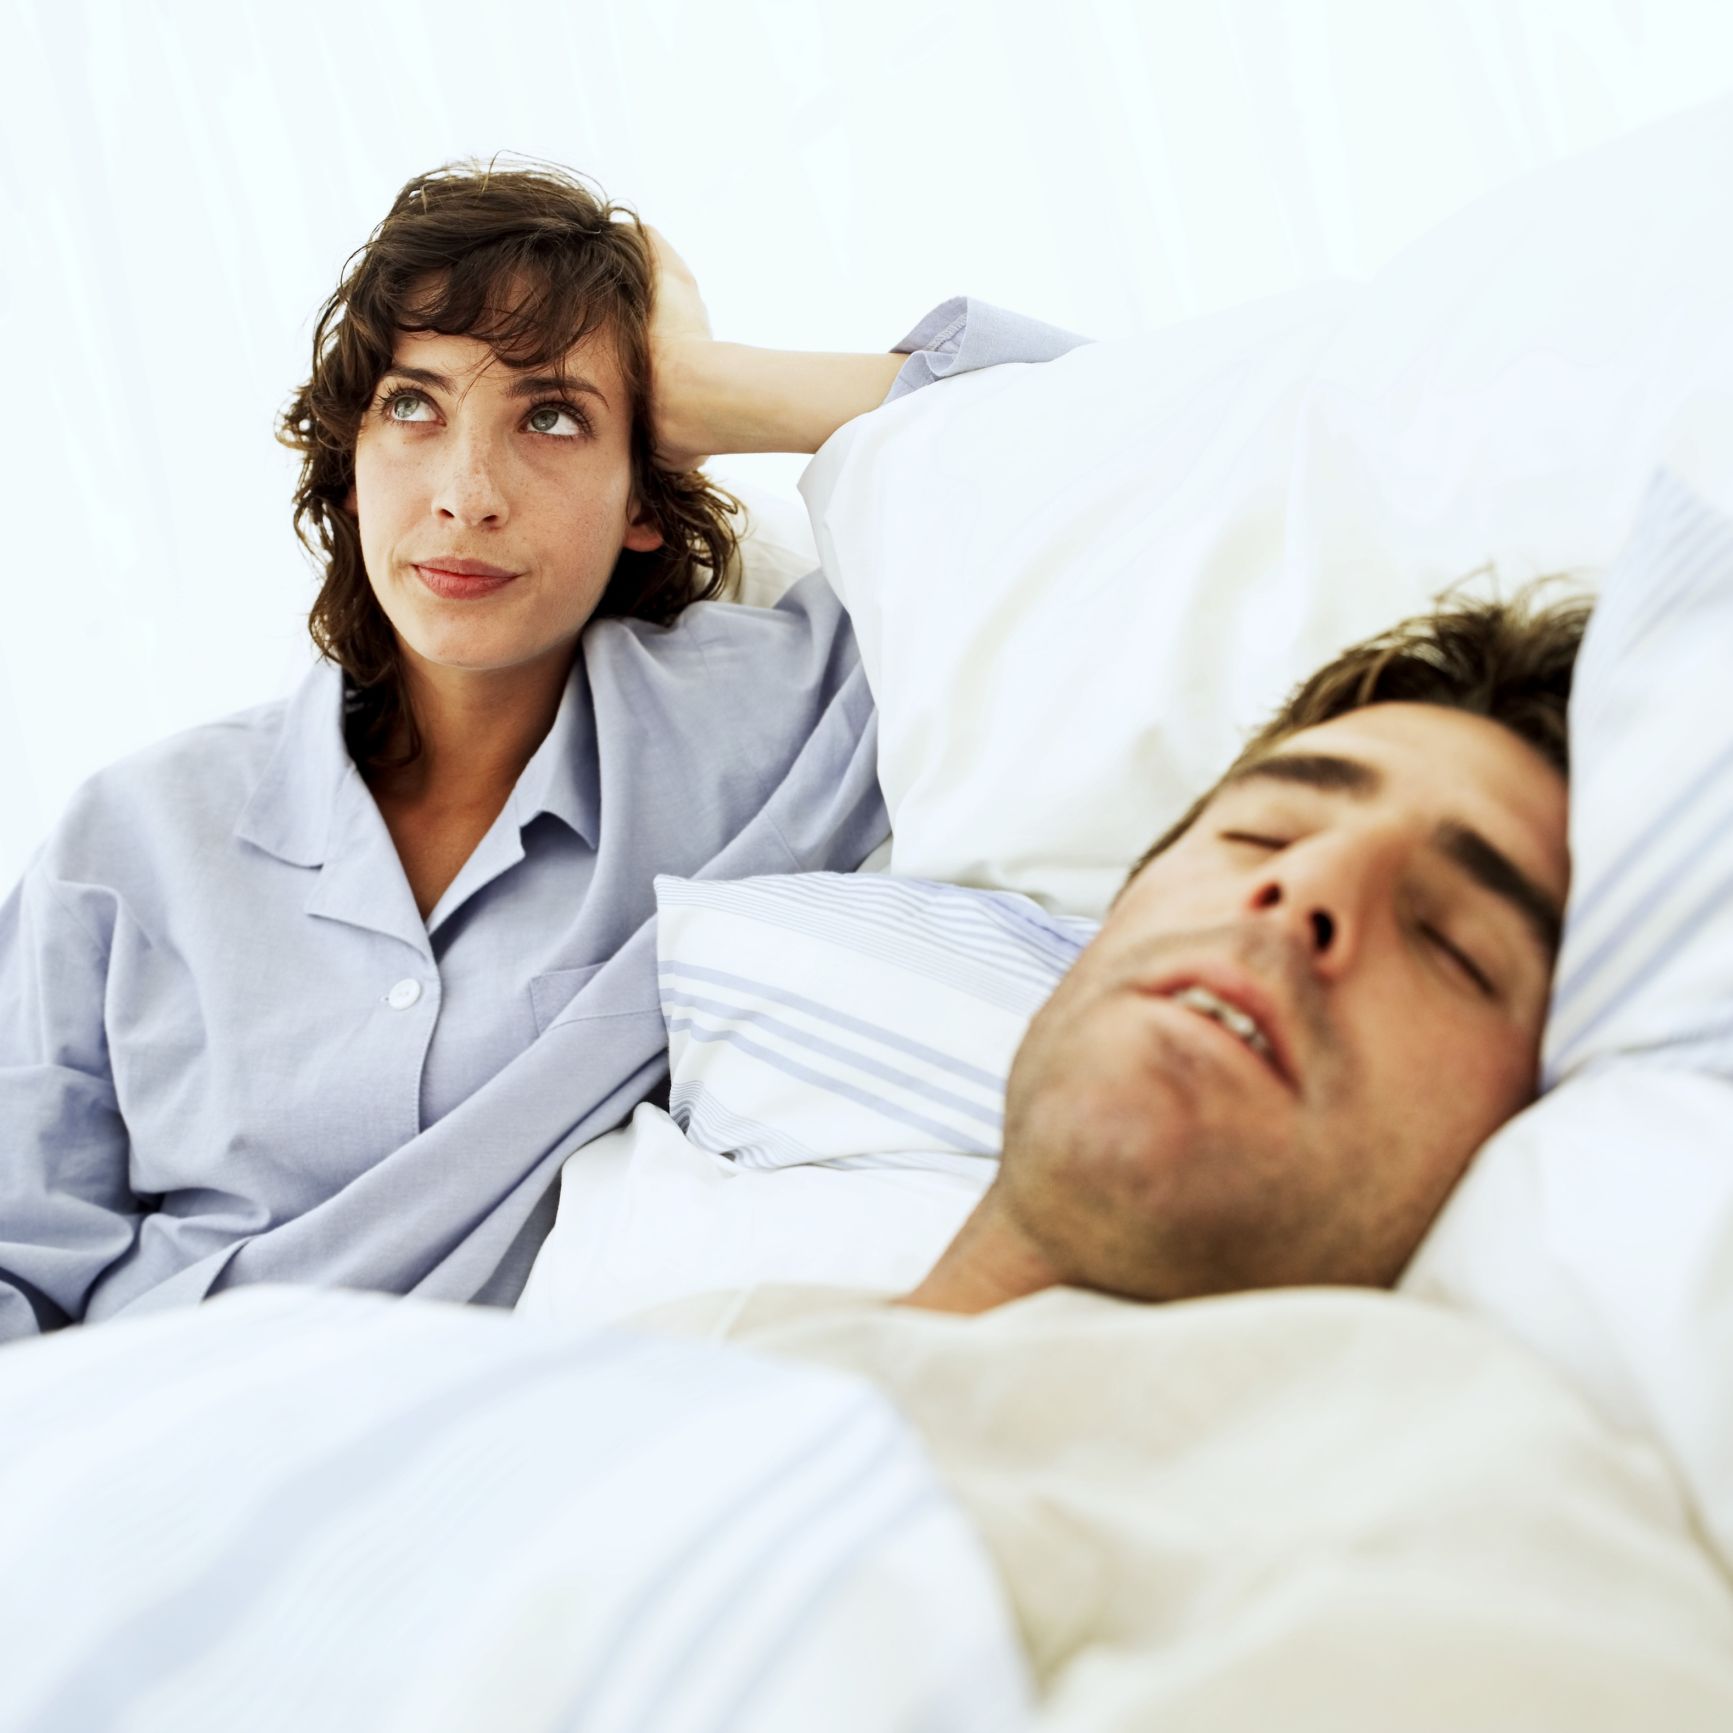 Bis Sal Xxx Video - Men fall asleep, women cuddle and other post-sex behaviors that affect  relationships | CNN